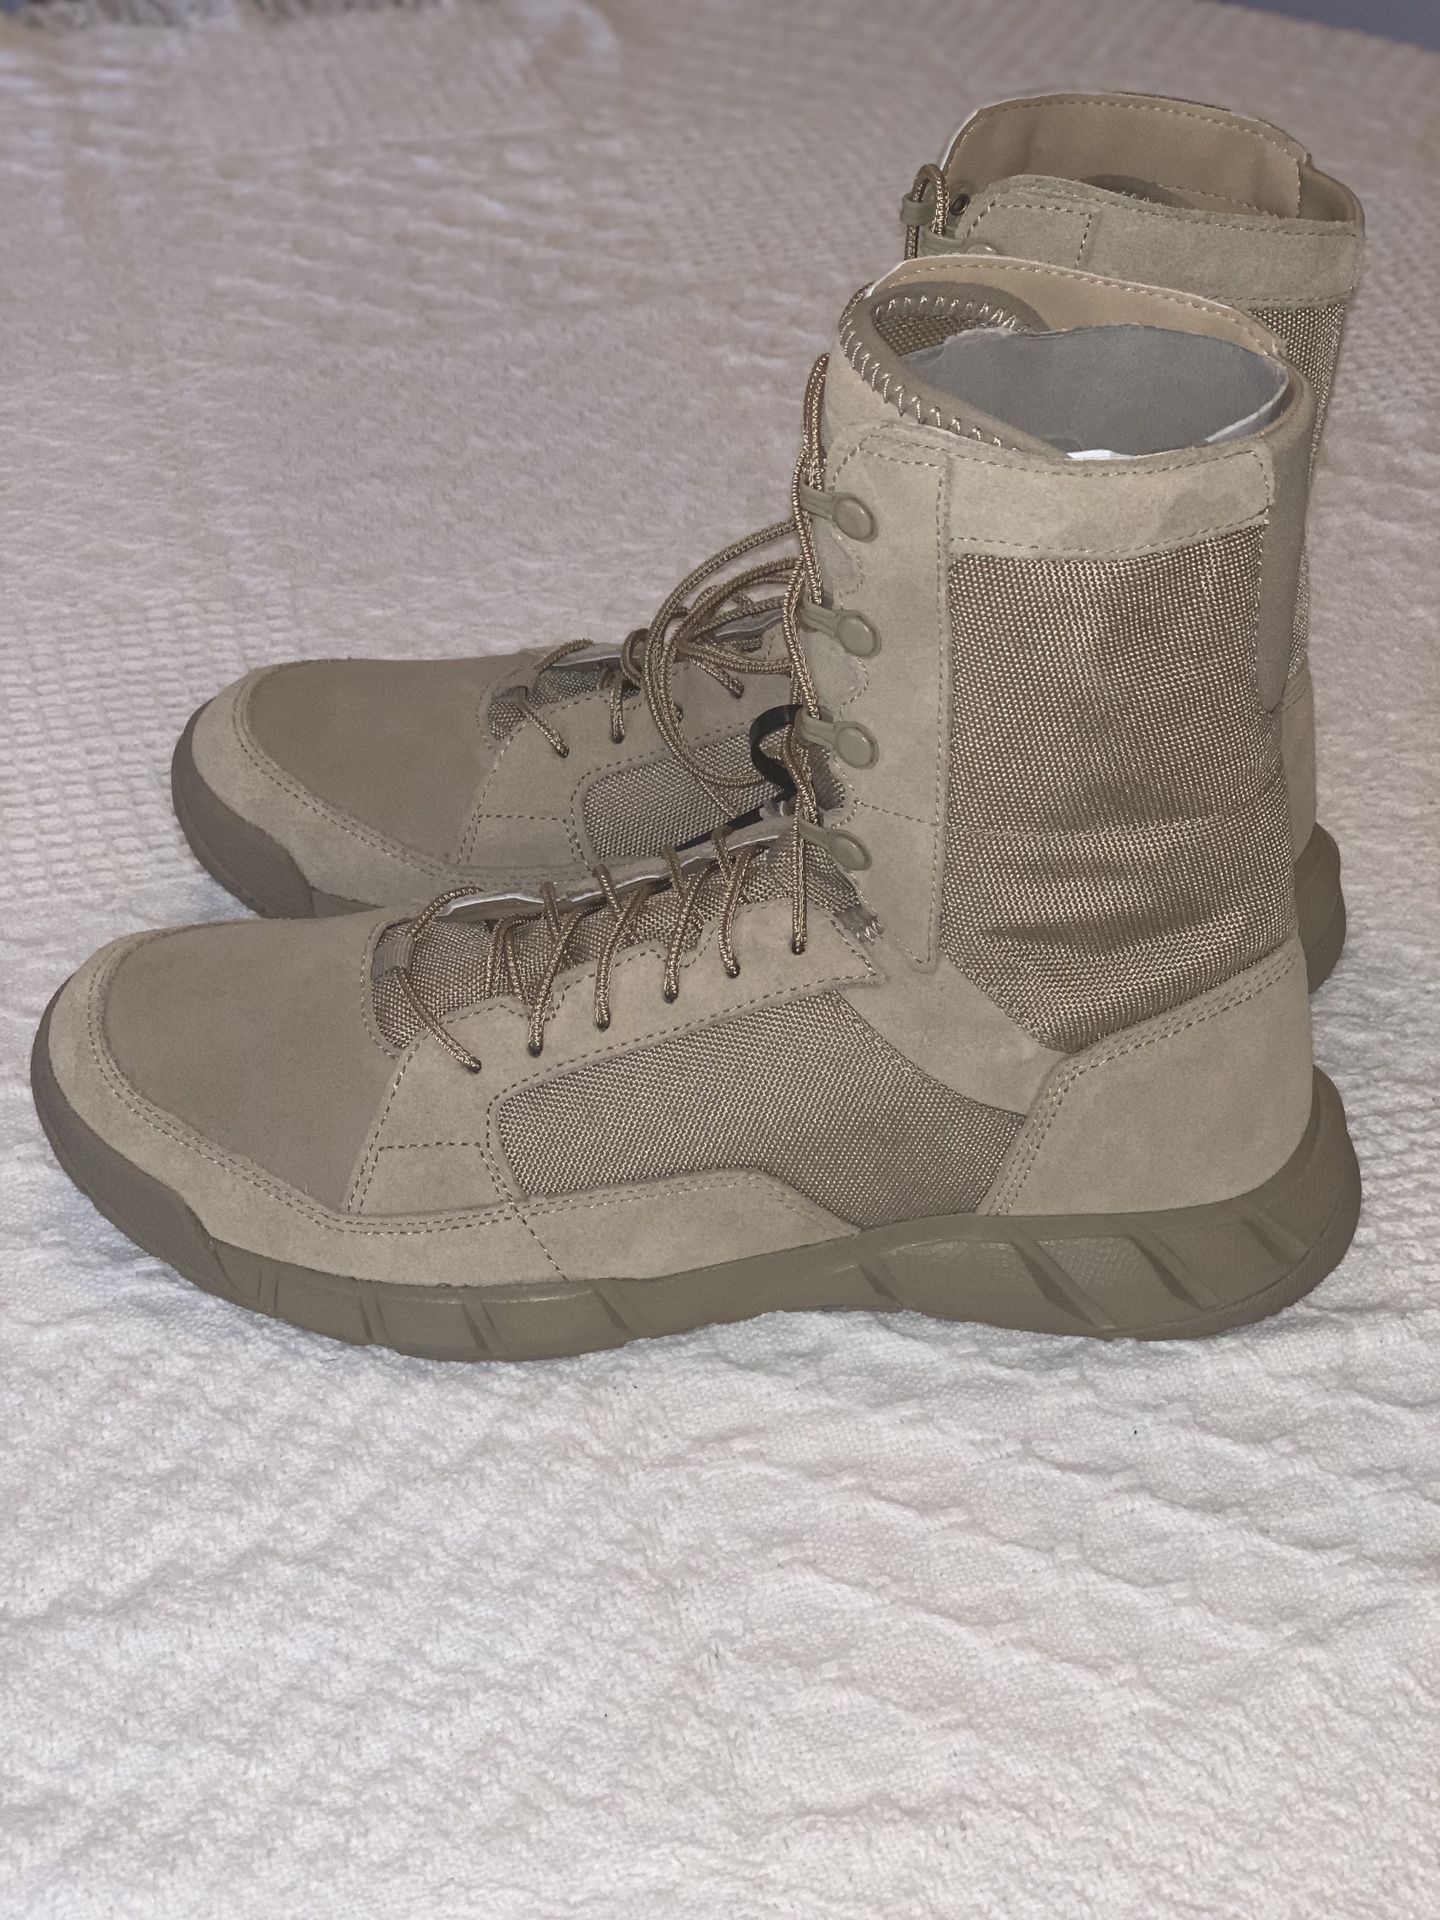 Men’s Light Assault Boot 2 Boots (Size 10) Under Armour